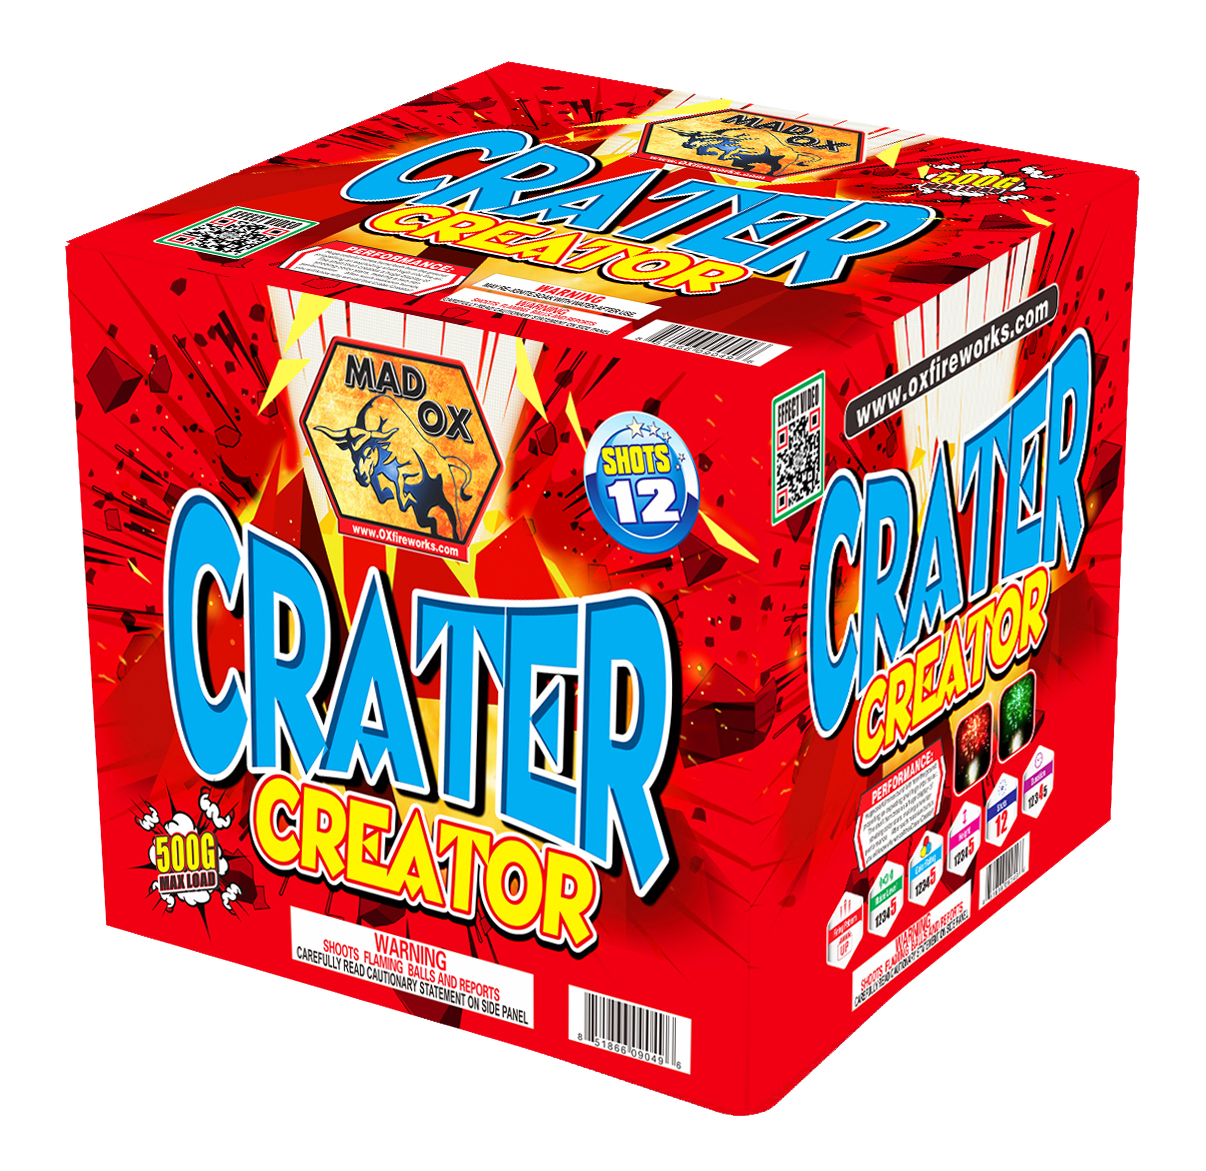 Crater Creator